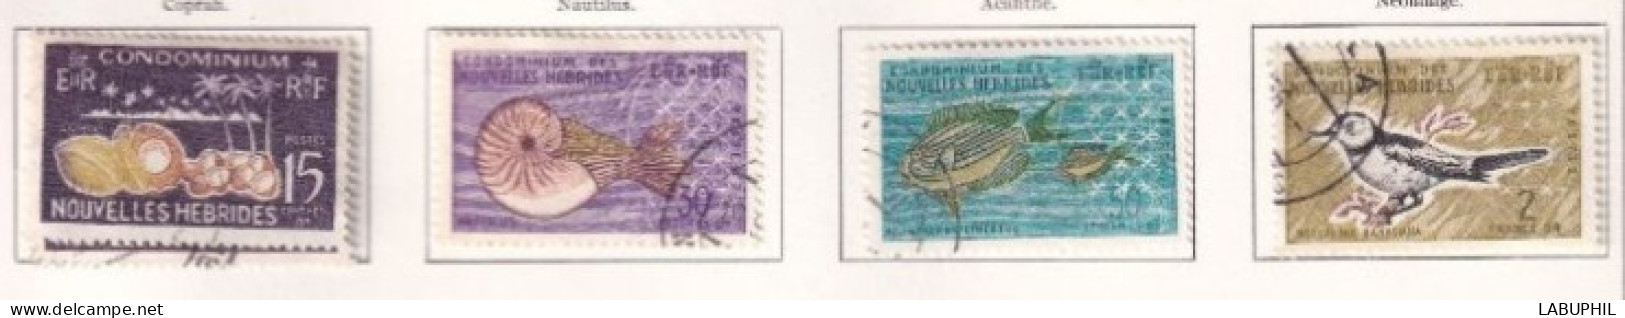 NOUVELLES HEBRIDES Dispersion D'une Collection Oblitéré Et Mlh  1963 Faune - Oblitérés